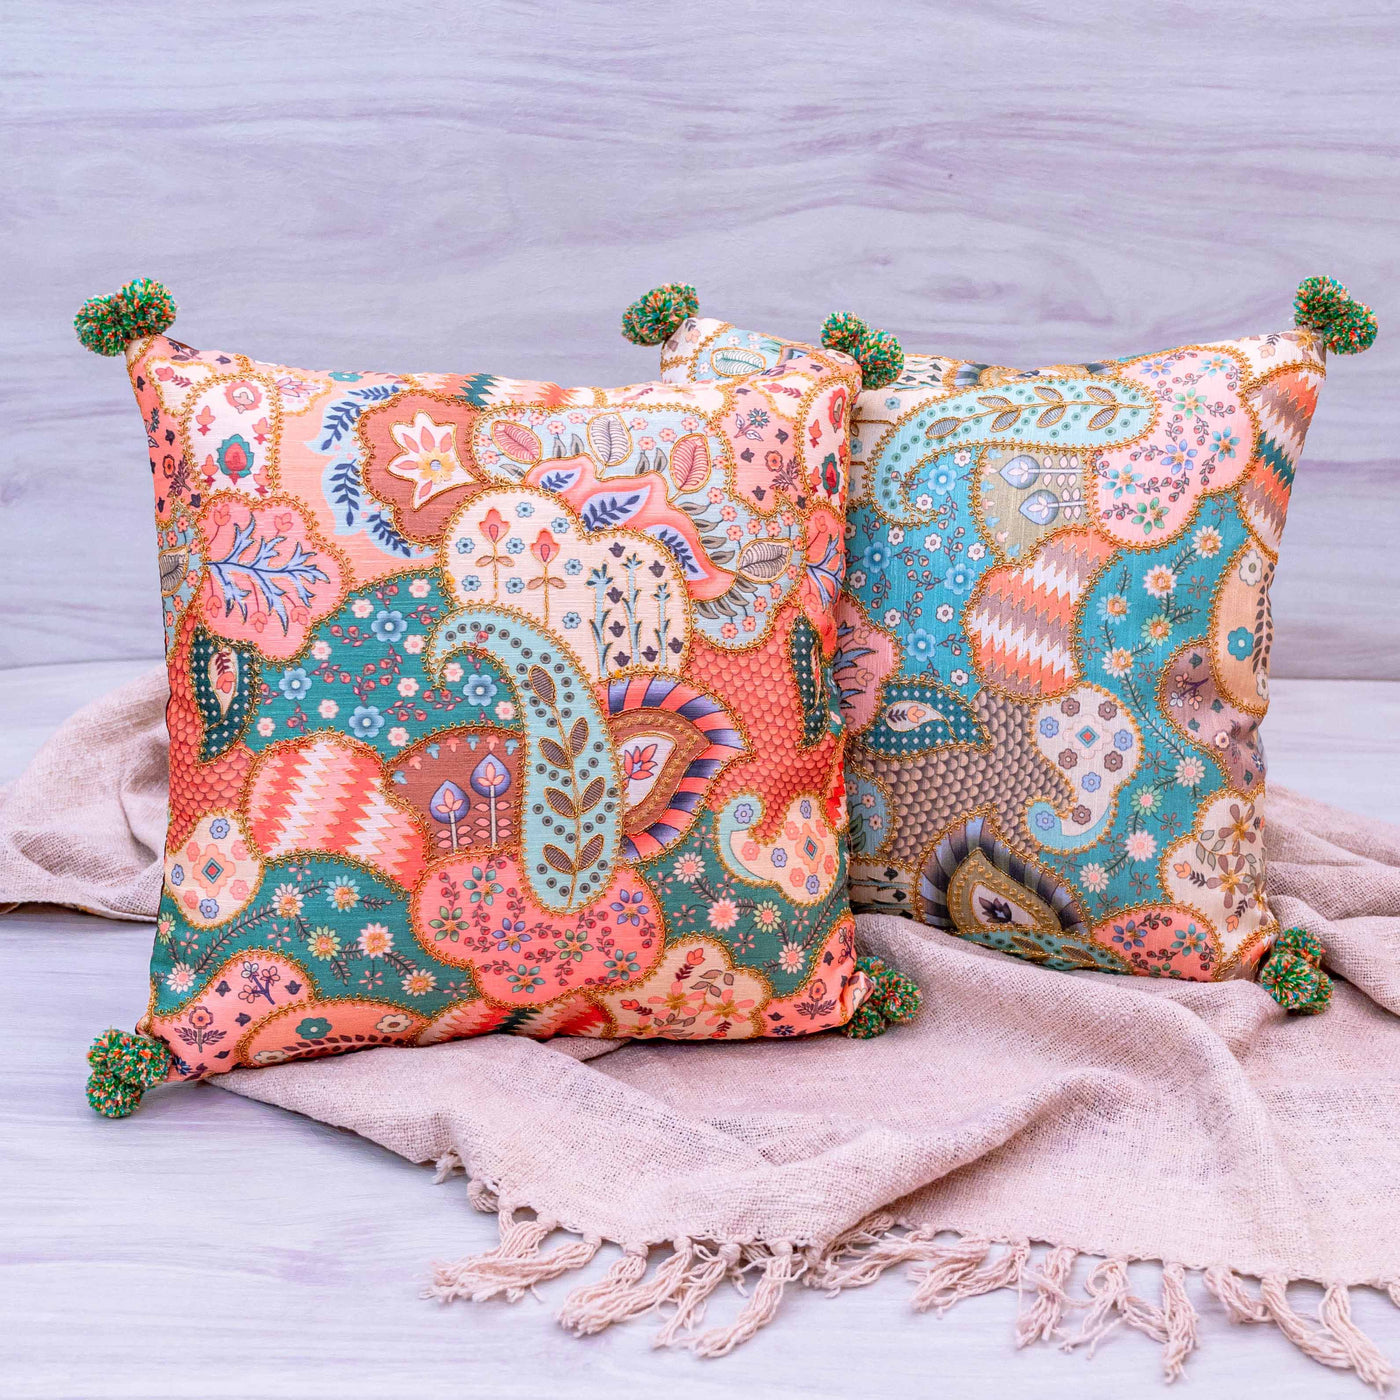 Mandala cushion covers by Home 360